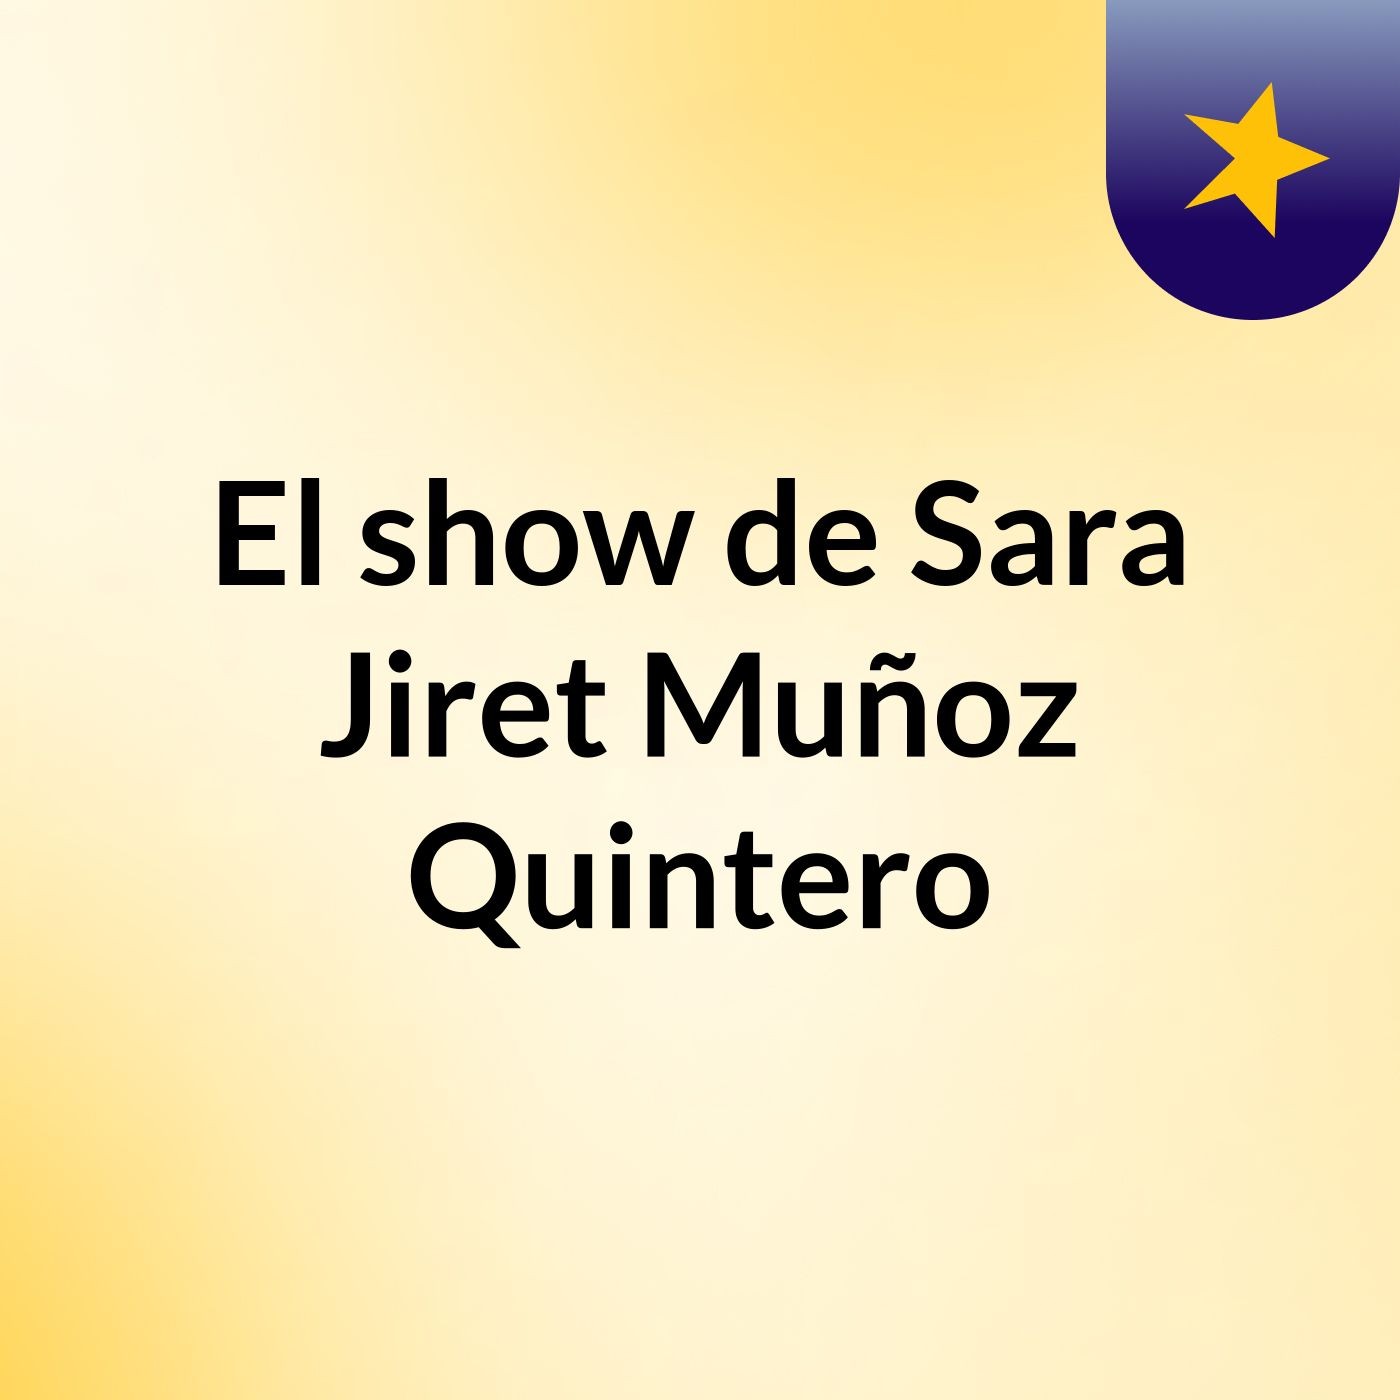 El show de Sara Jiret Muñoz Quintero